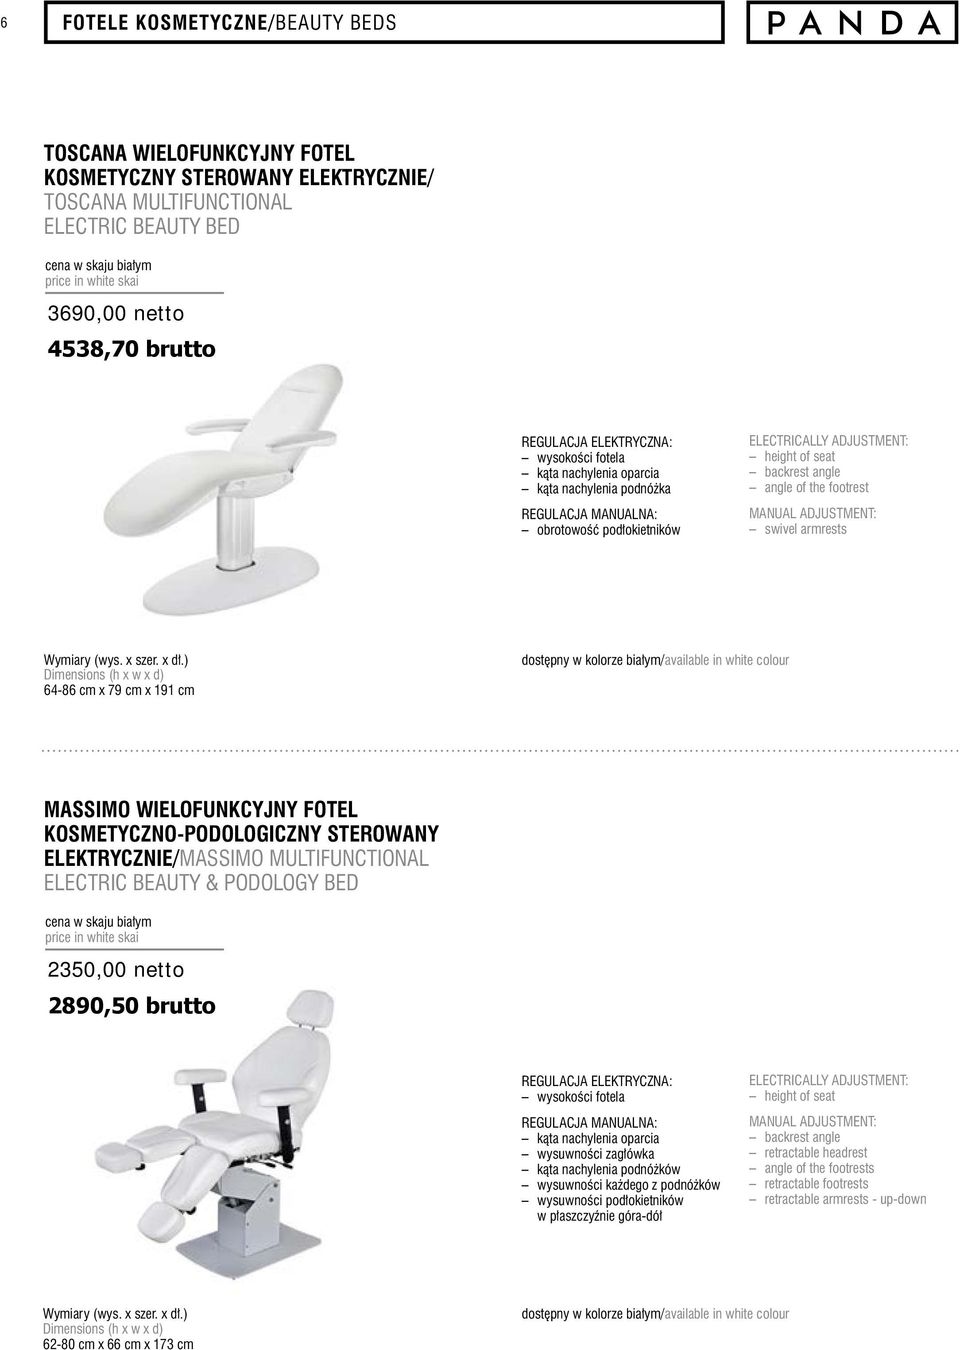 ADJUSTMENT: swivel armrests 64-86 cm x 79 cm x 191 cm dostępny w kolorze białym/available in white colour MASSIMO WIELOFUNKCYJNY FOTEL KOSMETYCZNO-PODOLOGICZNY STEROWANY ELEKTRYCZNIE/MASSIMO